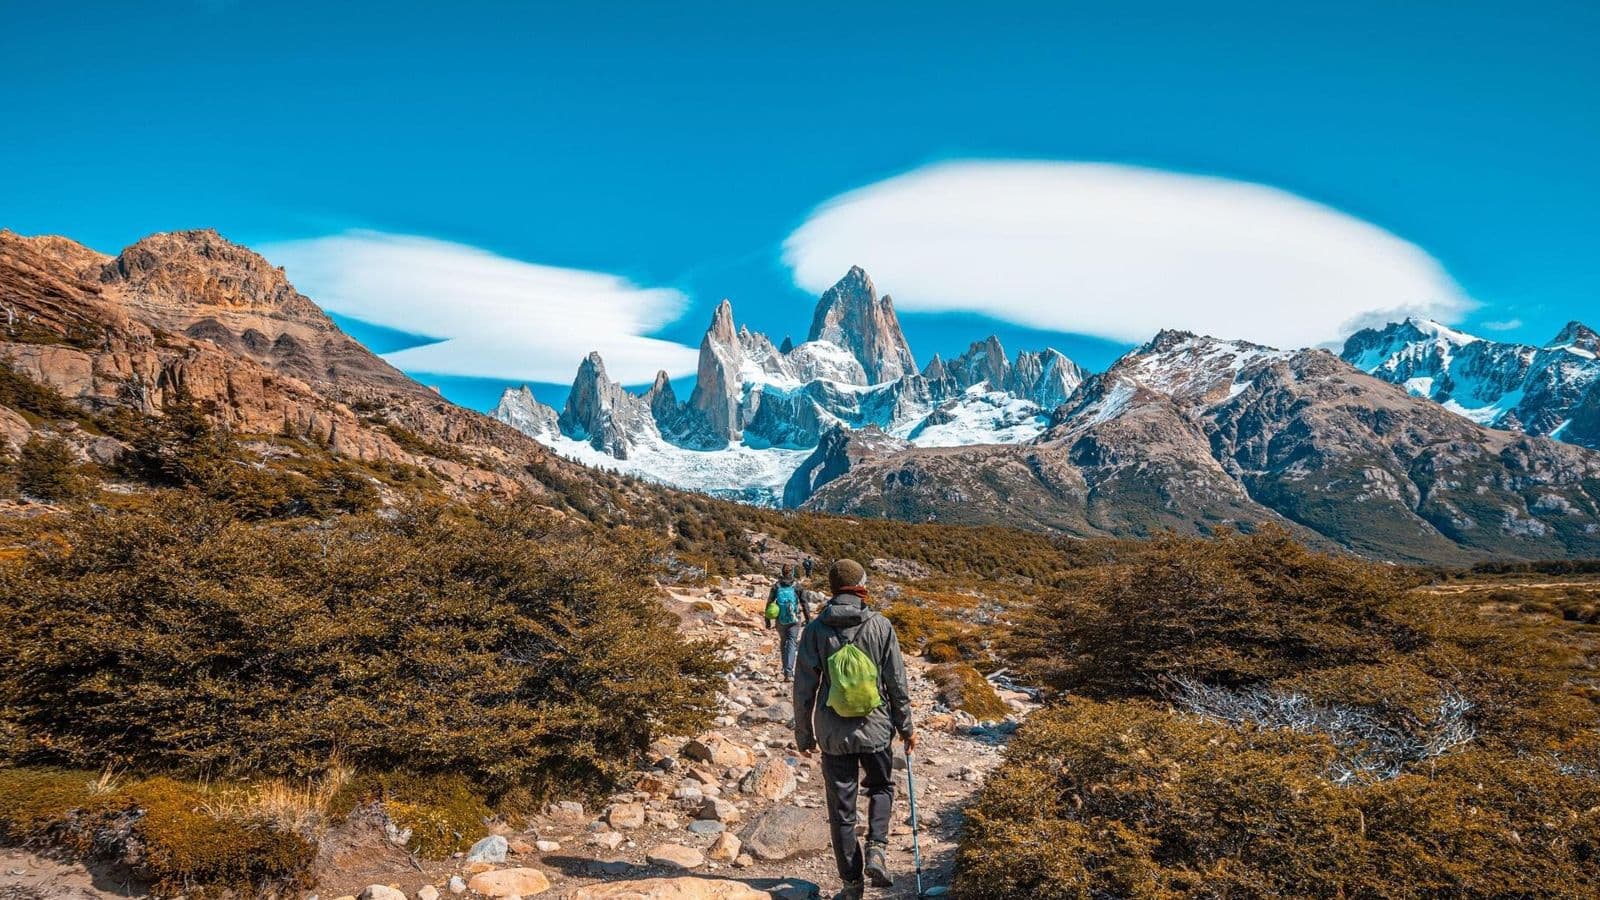 Patagonia trekking essentials: A checklist for a safe trek